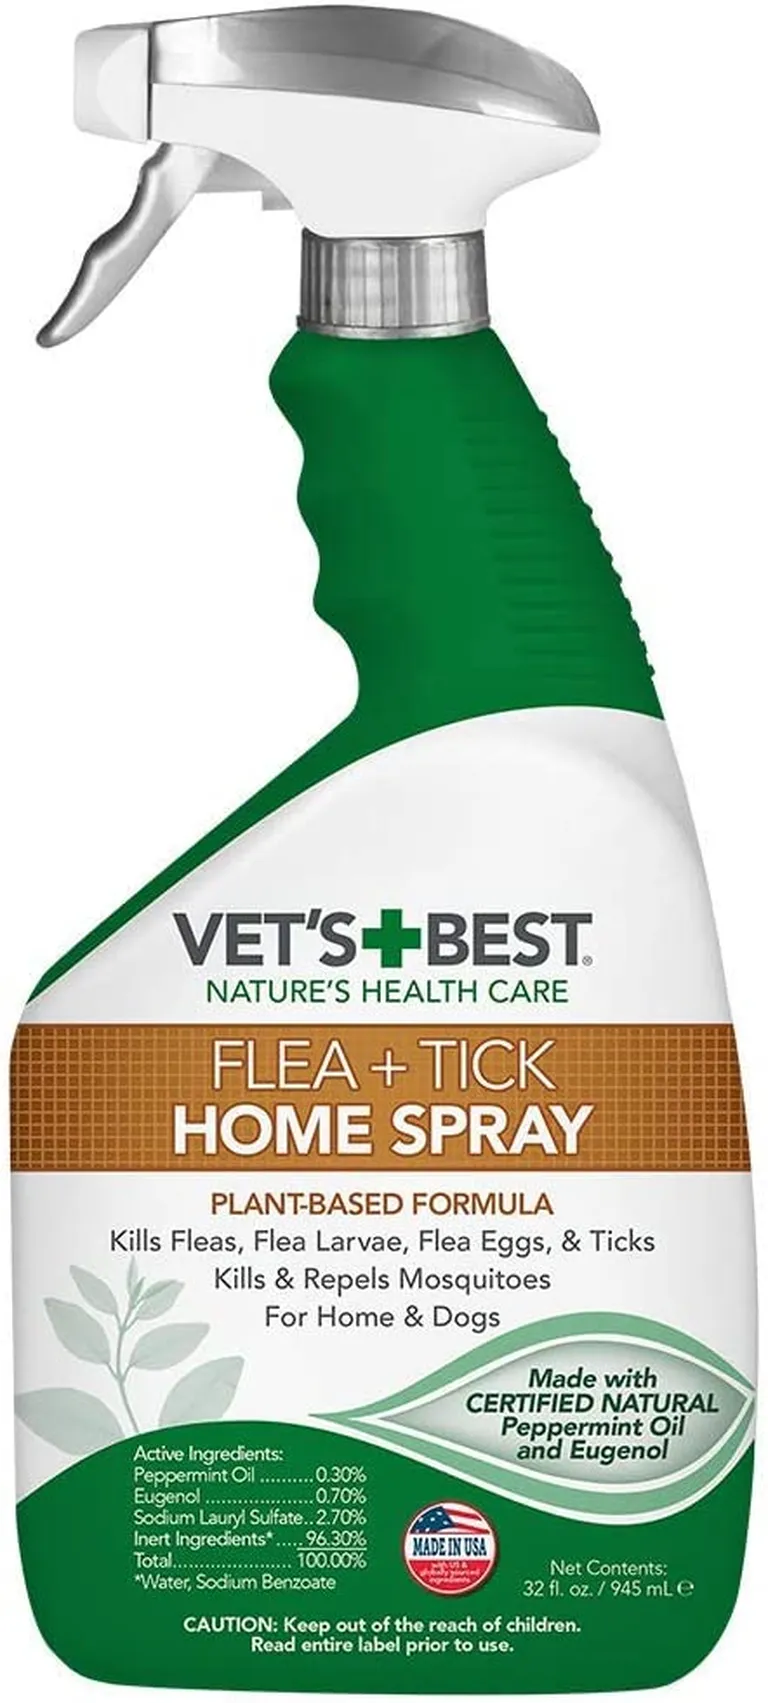 Vet's Best Flea & Tick Home Spray Photo 1